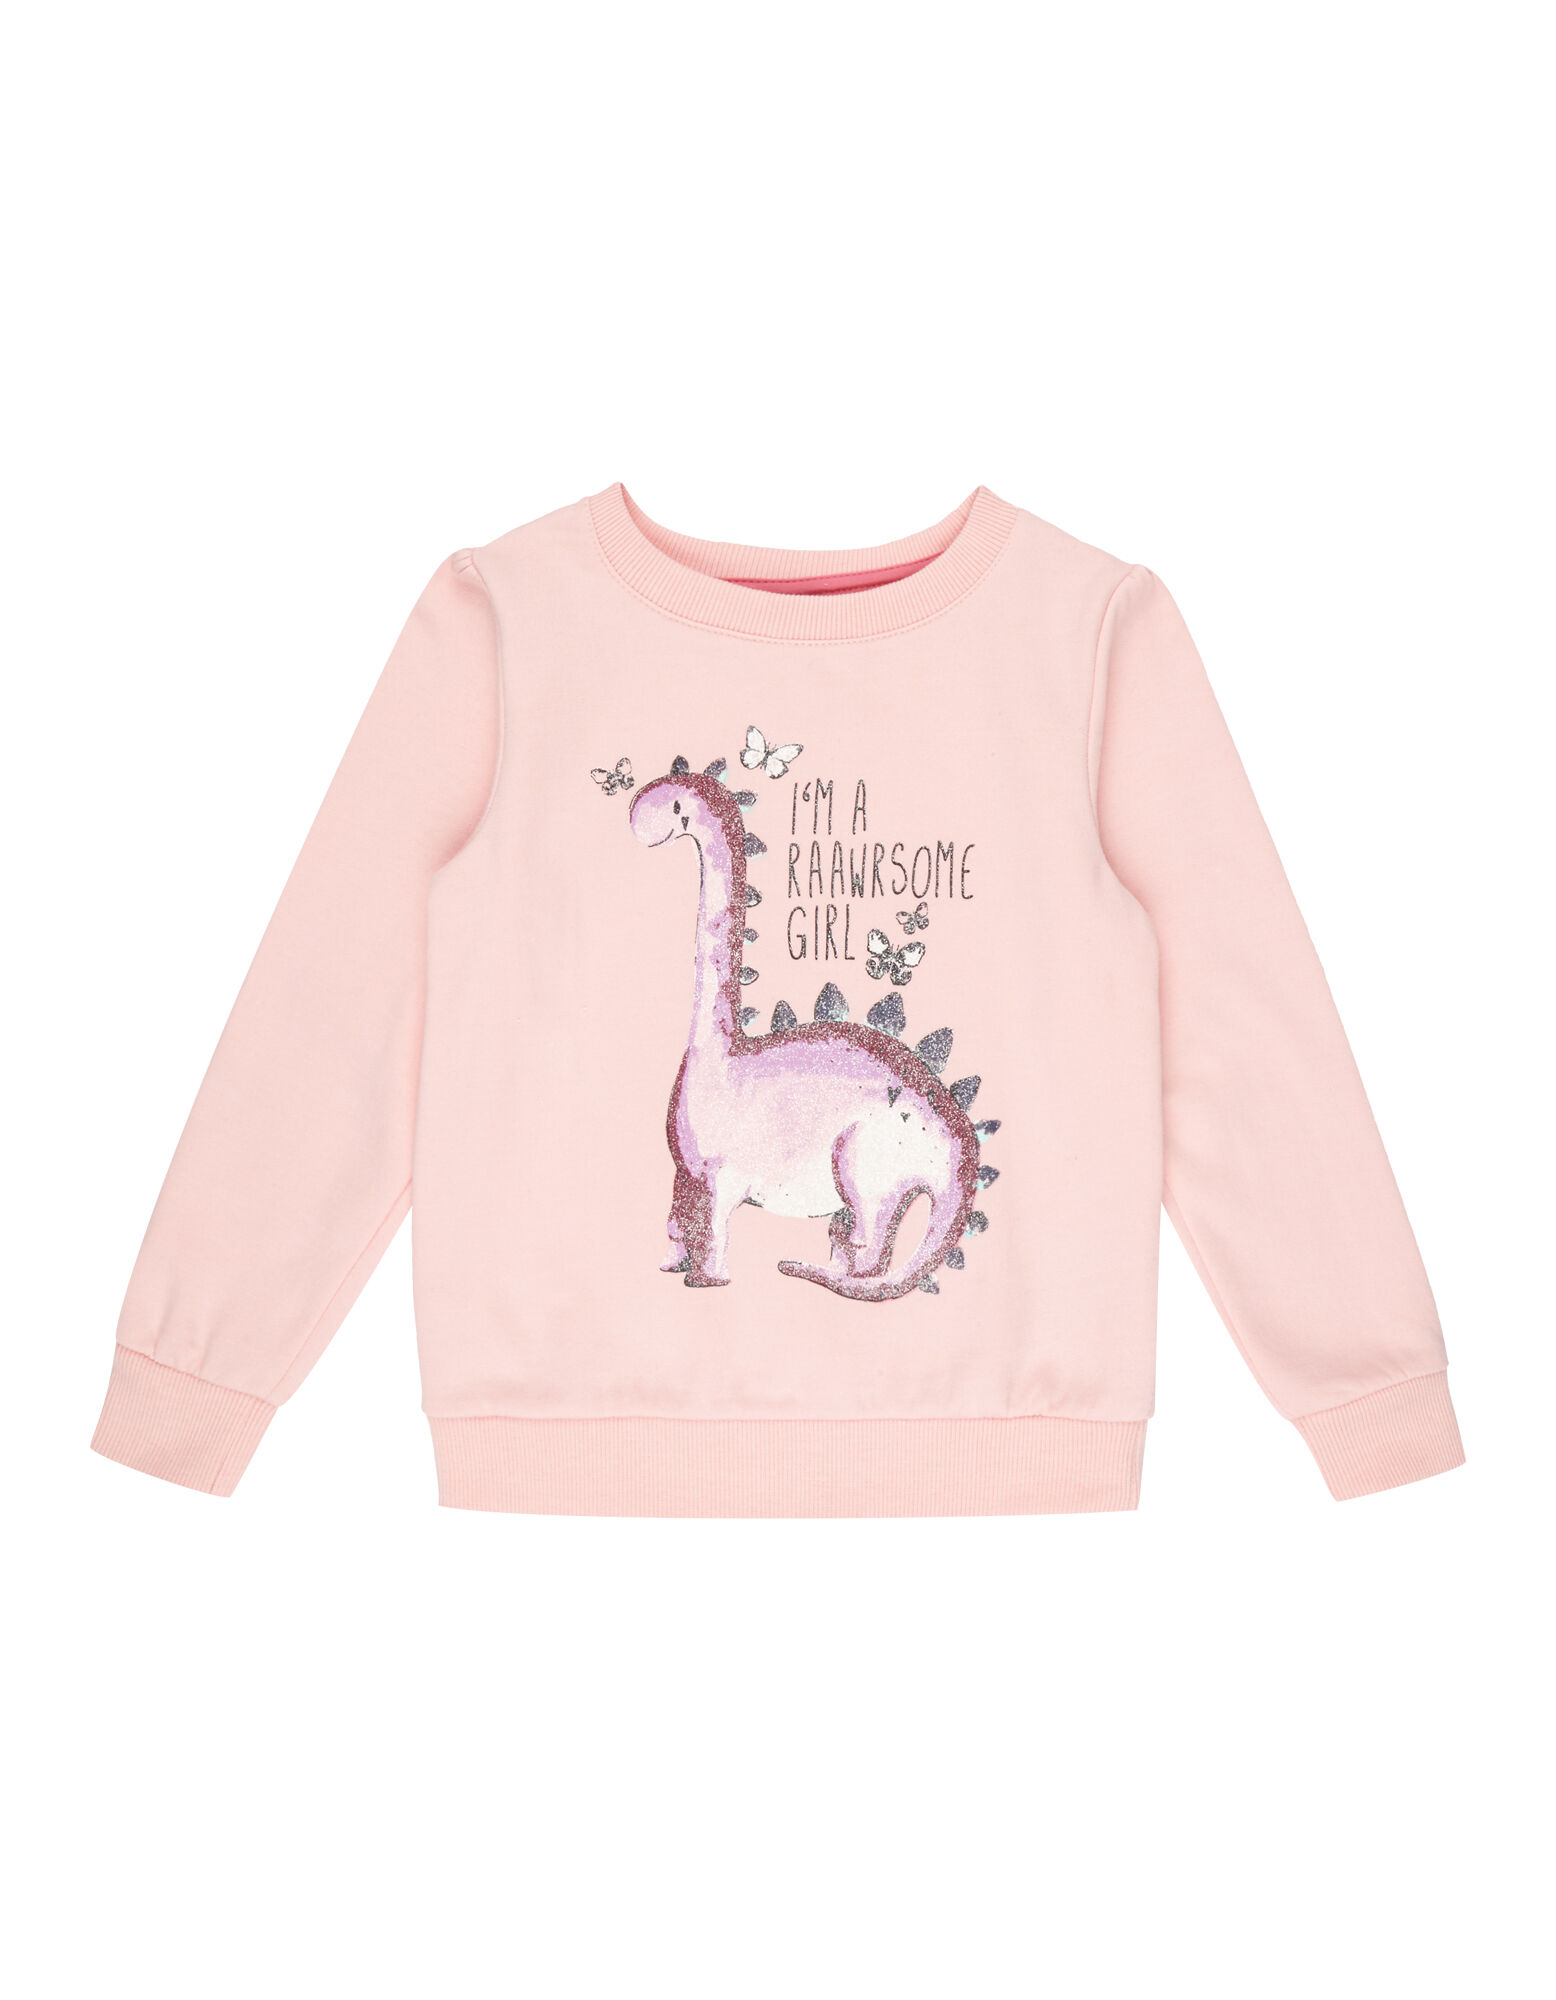 Mädchen Sweatshirt mit Dino-Print